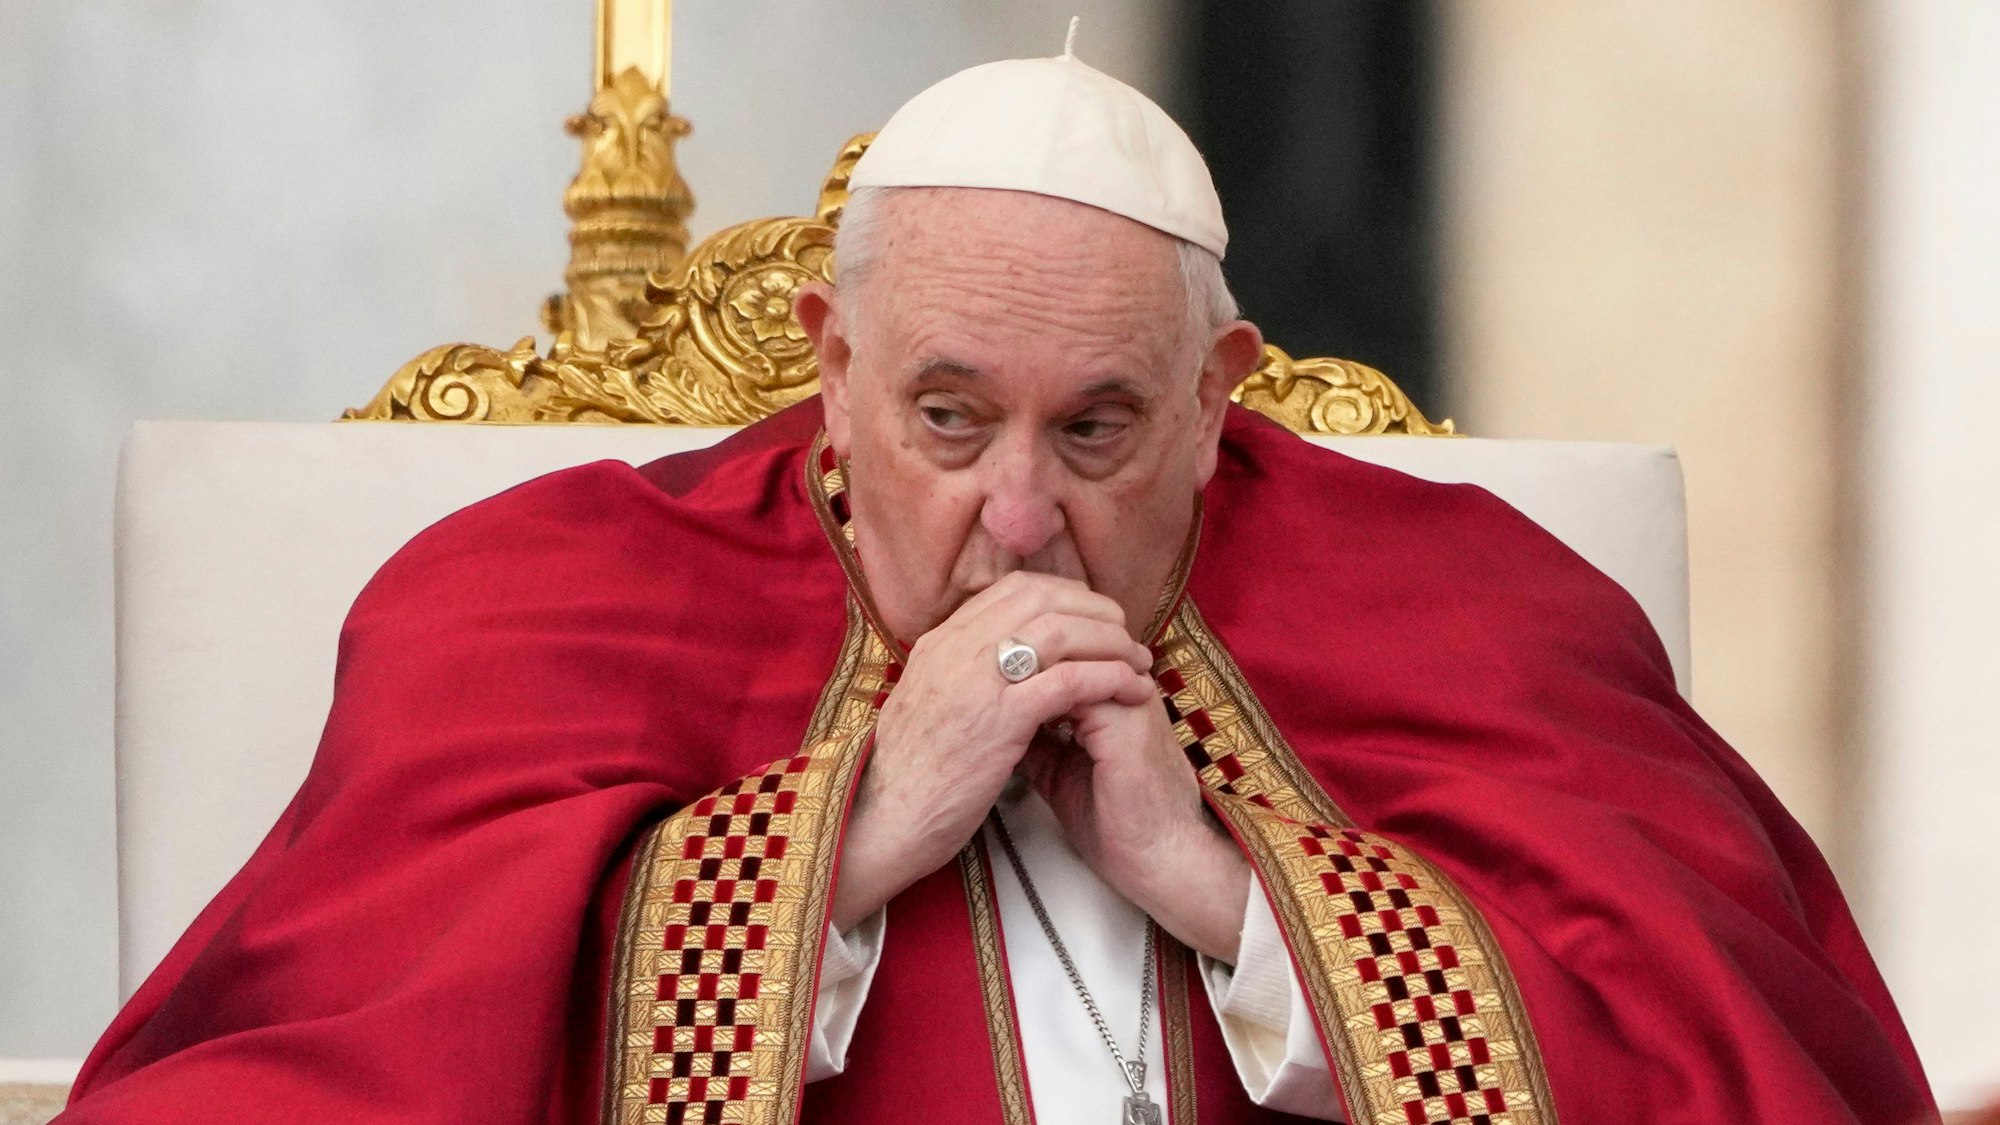 Papst Franziskus steht für seine jüngsten Äußerungen zum russischen Krieg gegen die Ukraine in der Kritik. (Archivbild)